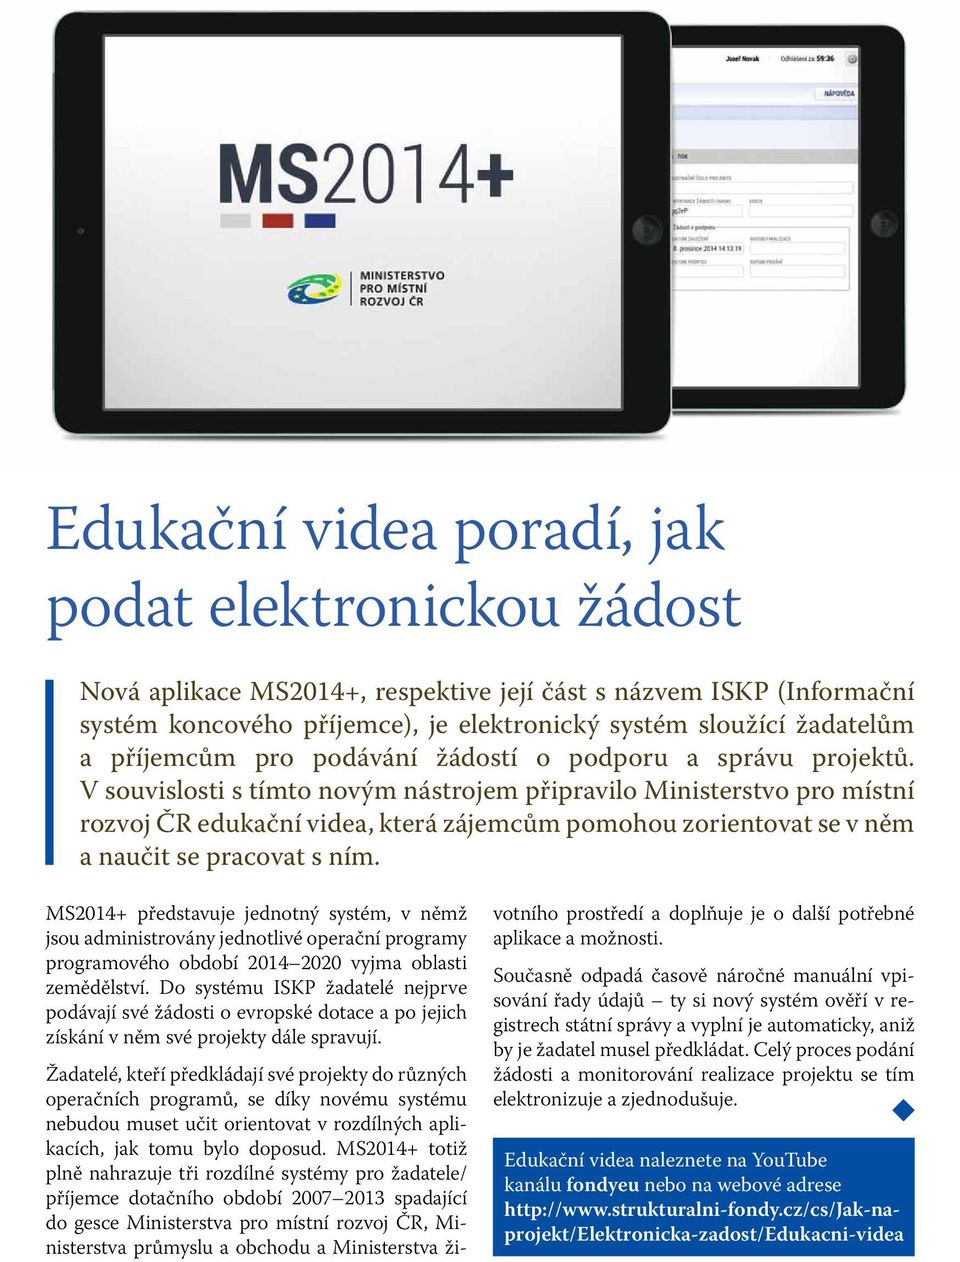 V souvislosti s tímto novým nástrojem připravilo Ministerstvo pro místní rozvoj ČR edukační videa, která zájemcům pomohou zorientovat se v něm a naučit se pracovat s ním.